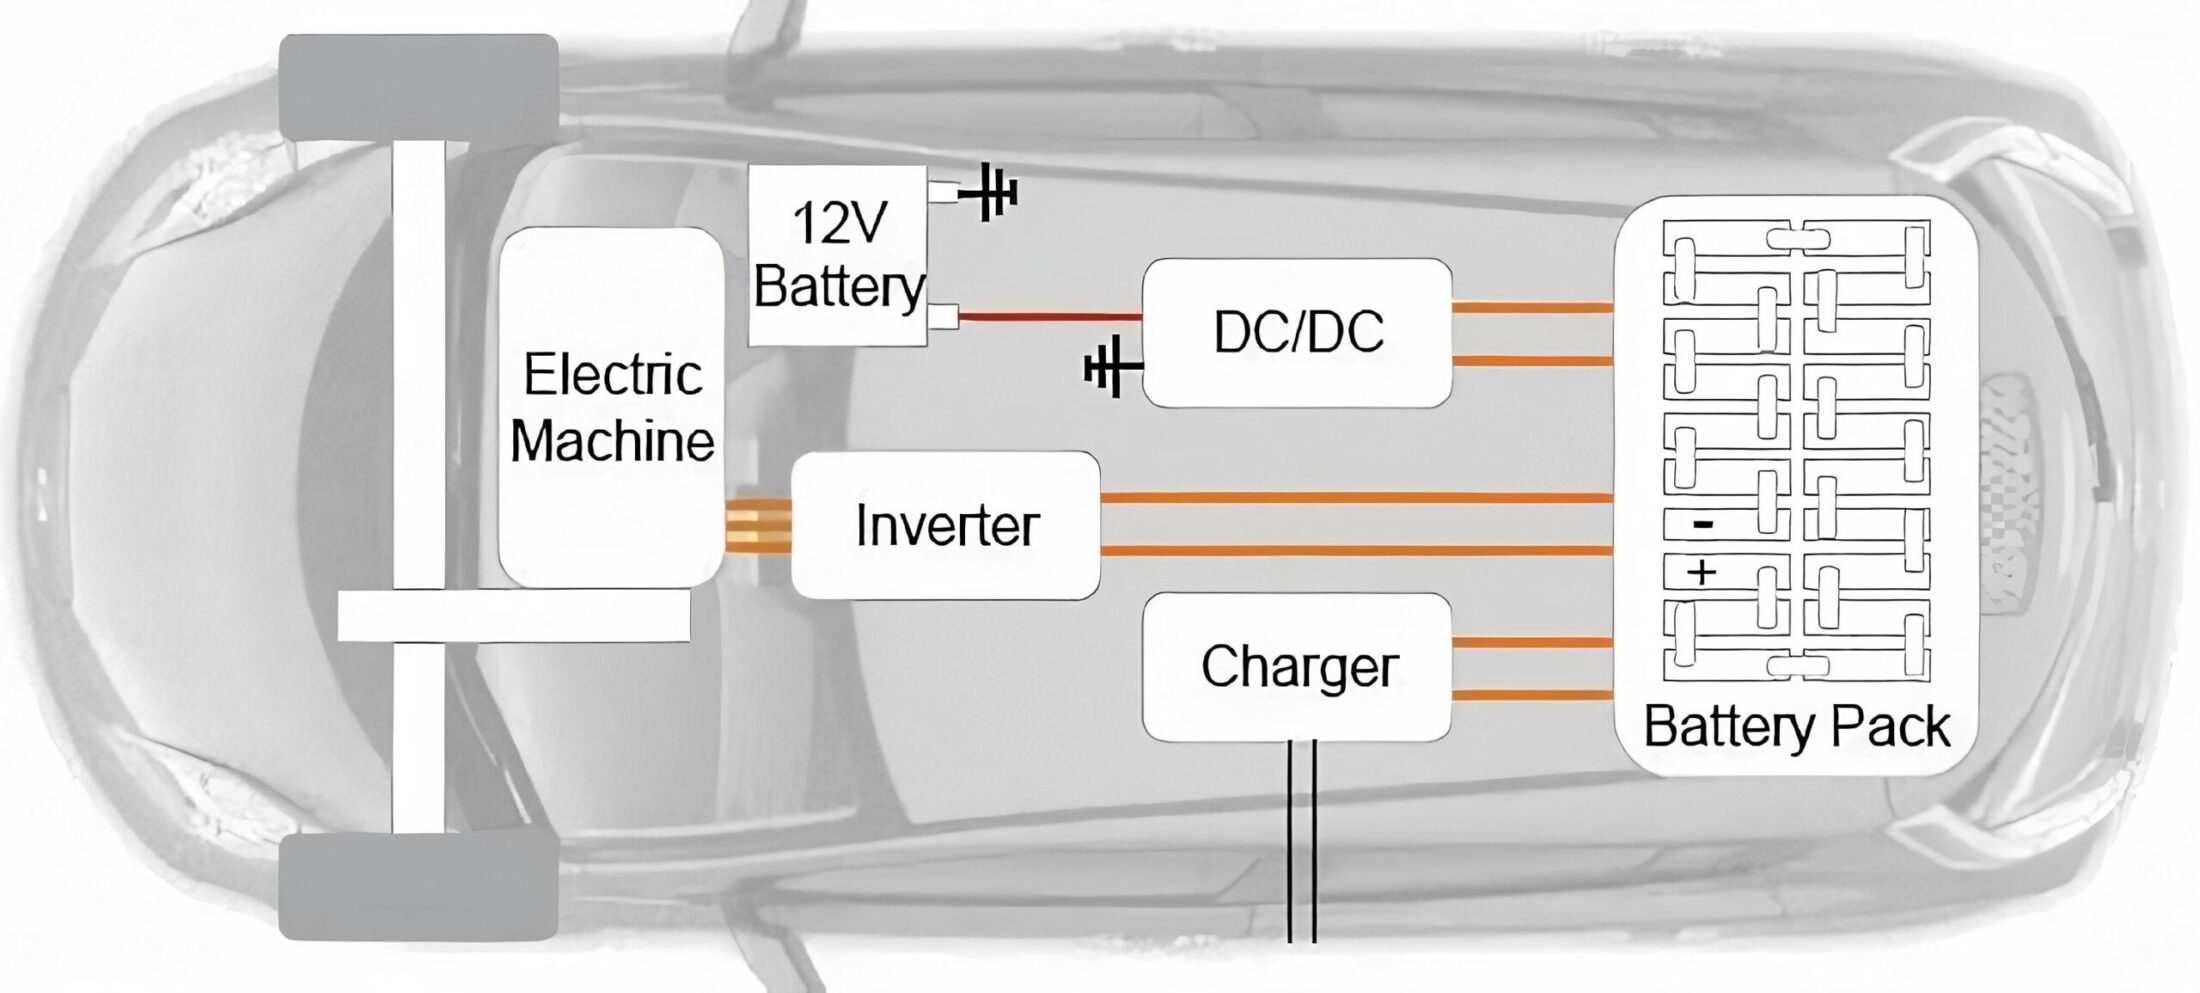 https://e-vehicleinfo.com/electric-vehicle-architecture-ev-powertrain-components/